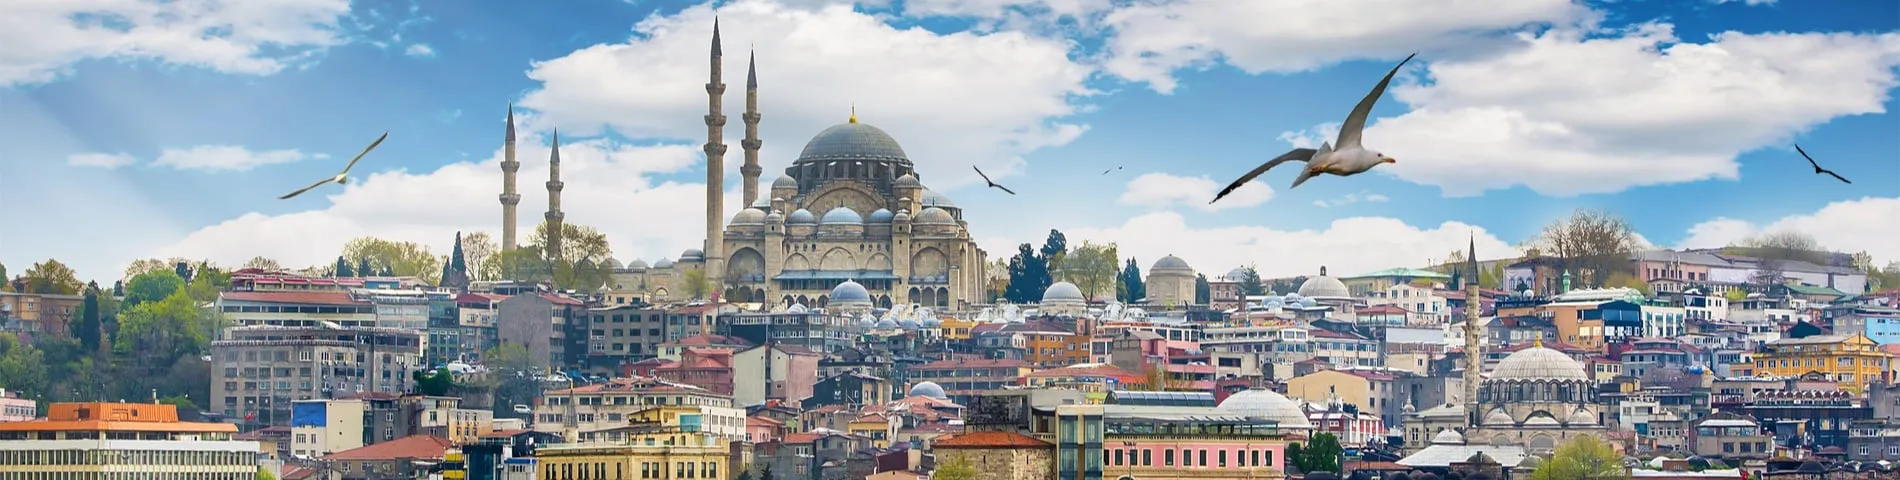 أسطنبول - الدورة العادية*